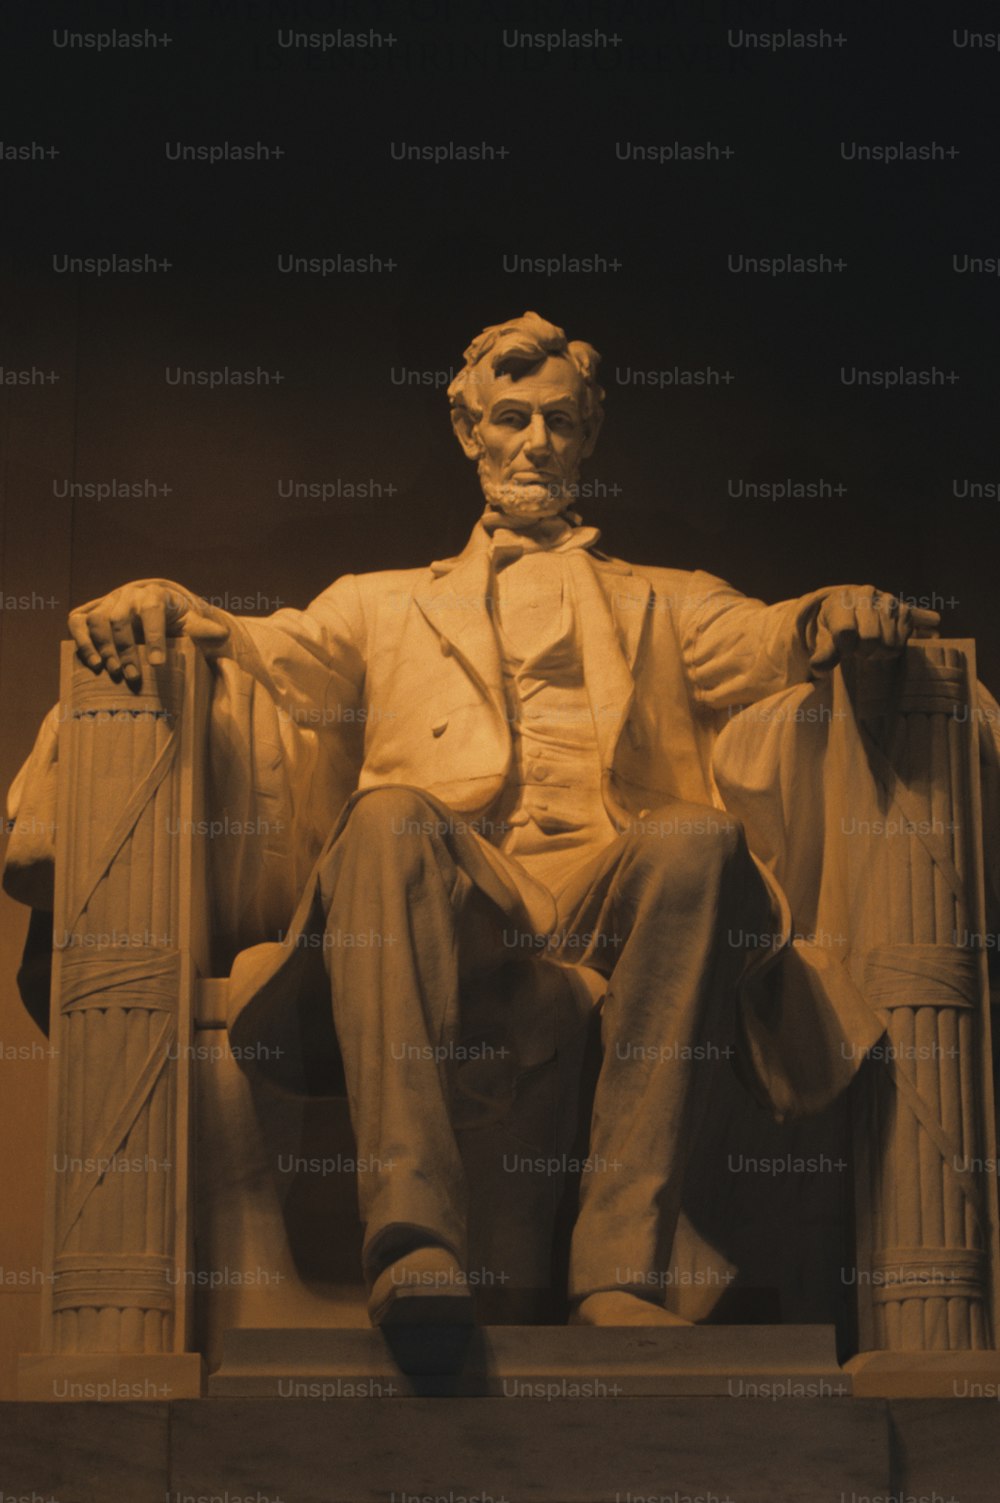 Eine Statue von Abraham Lincoln, die auf einem Stuhl sitzt